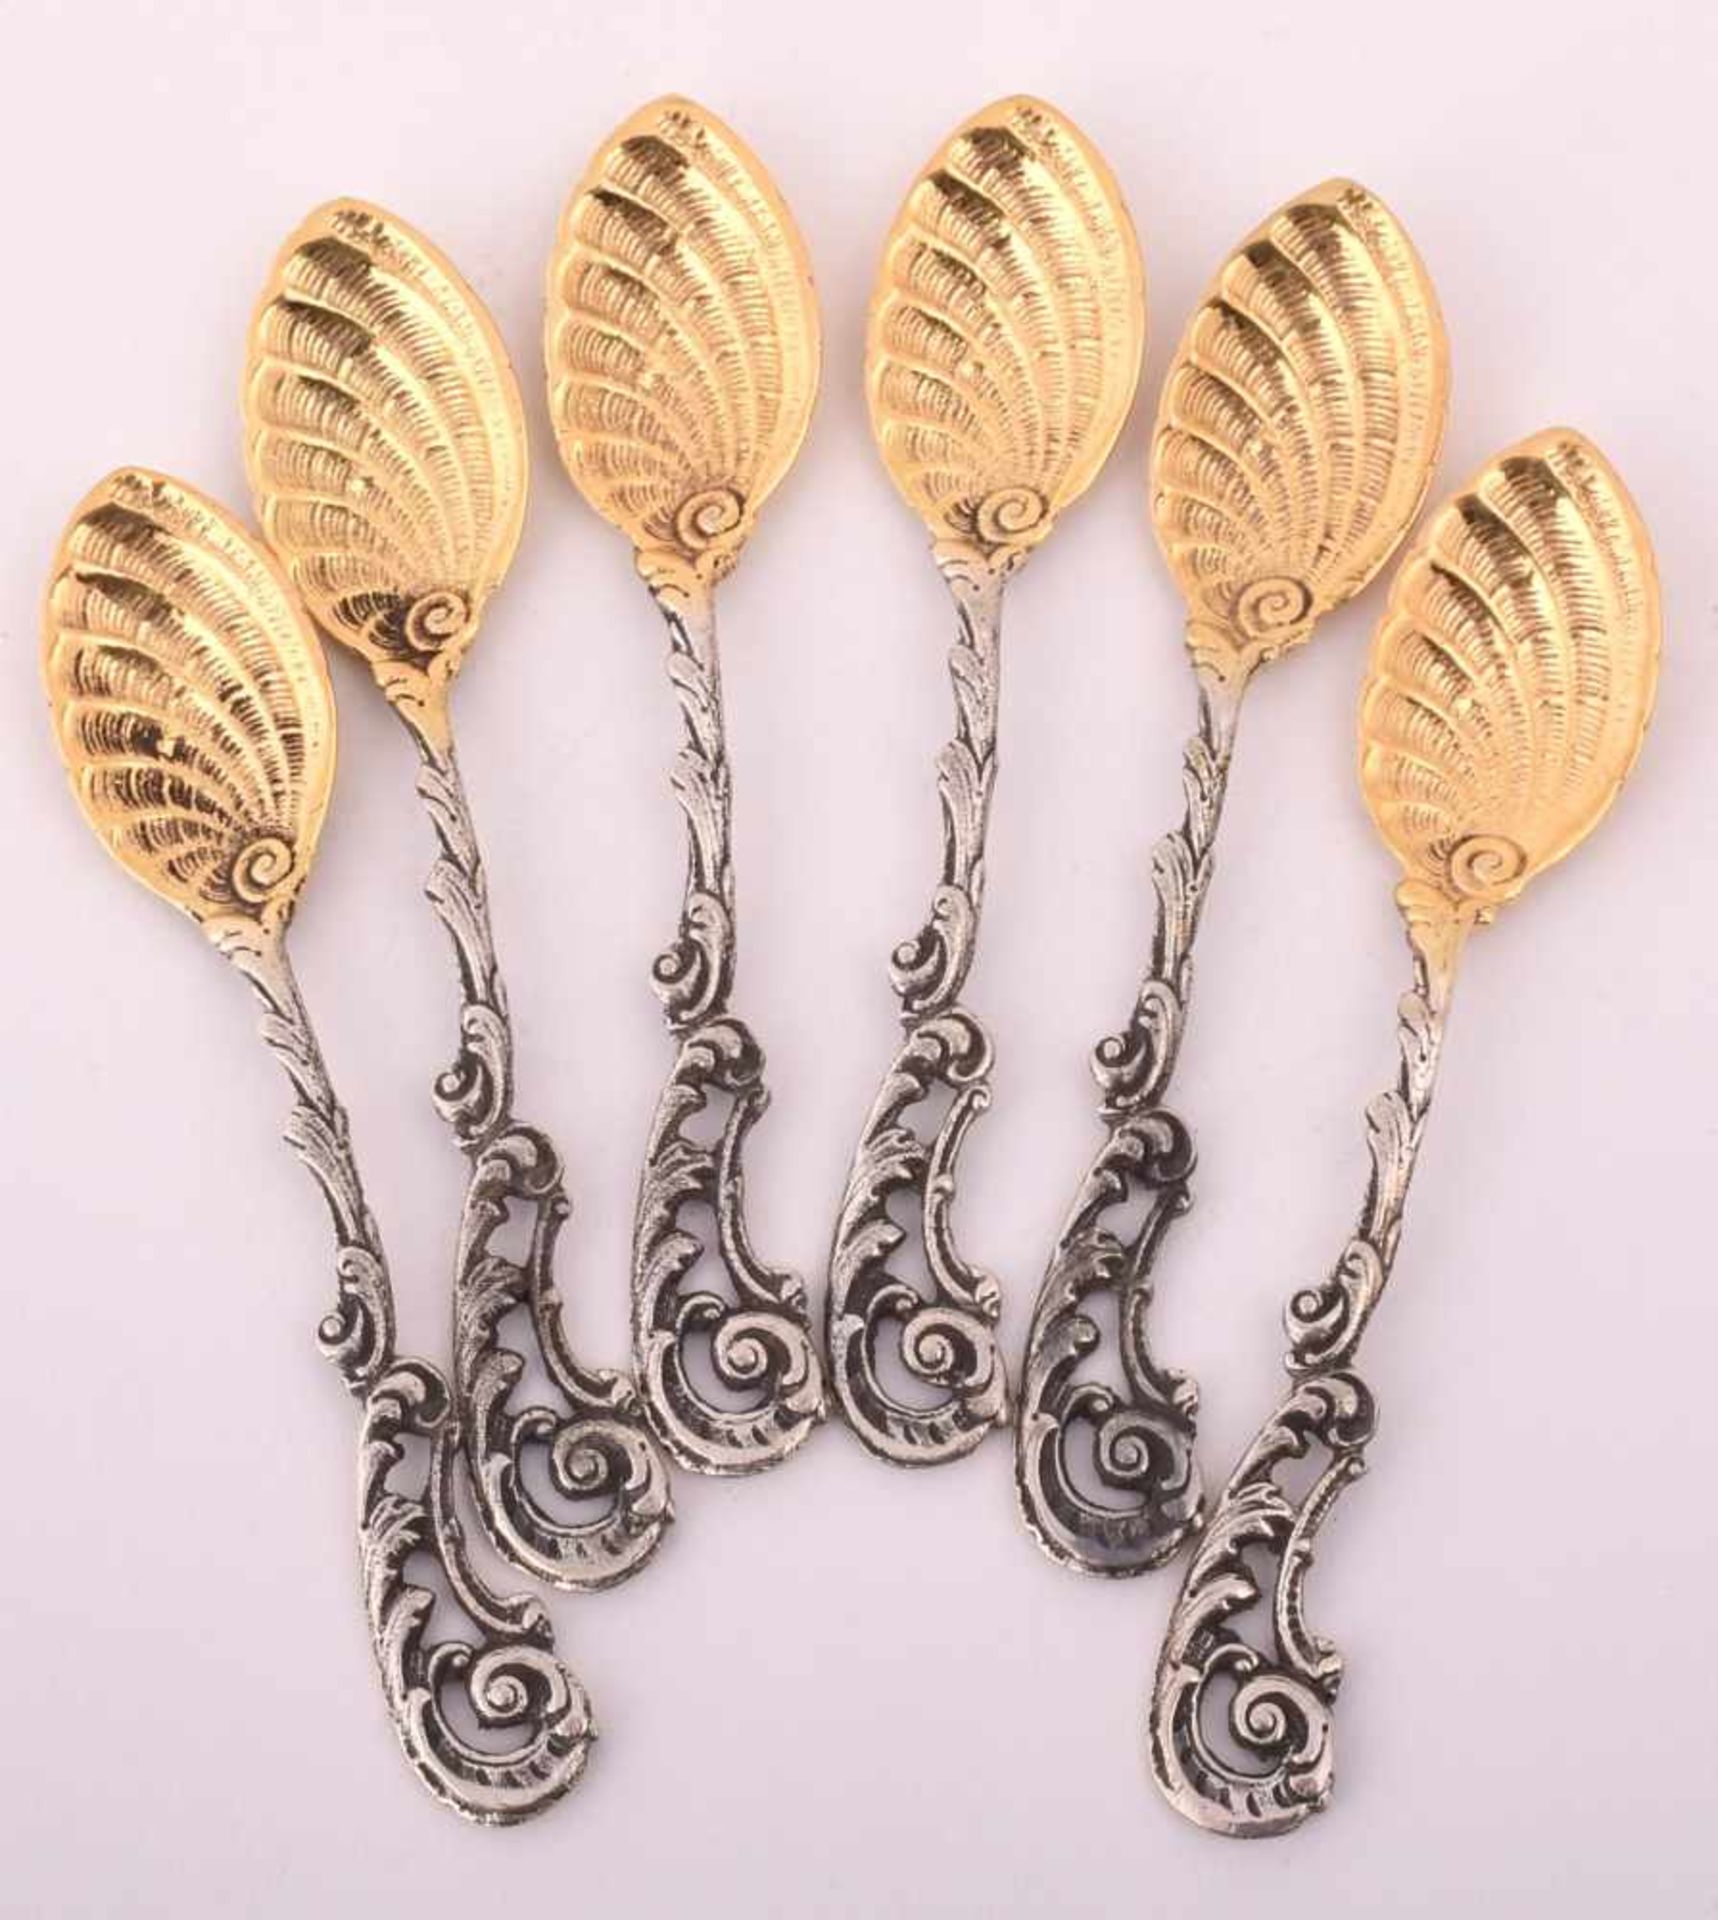 Sechs Mokkalöffel Silber 800, Teilvergoldung, gemarkt "F", im Stil des Rokoko, durchbrochen - Bild 2 aus 2